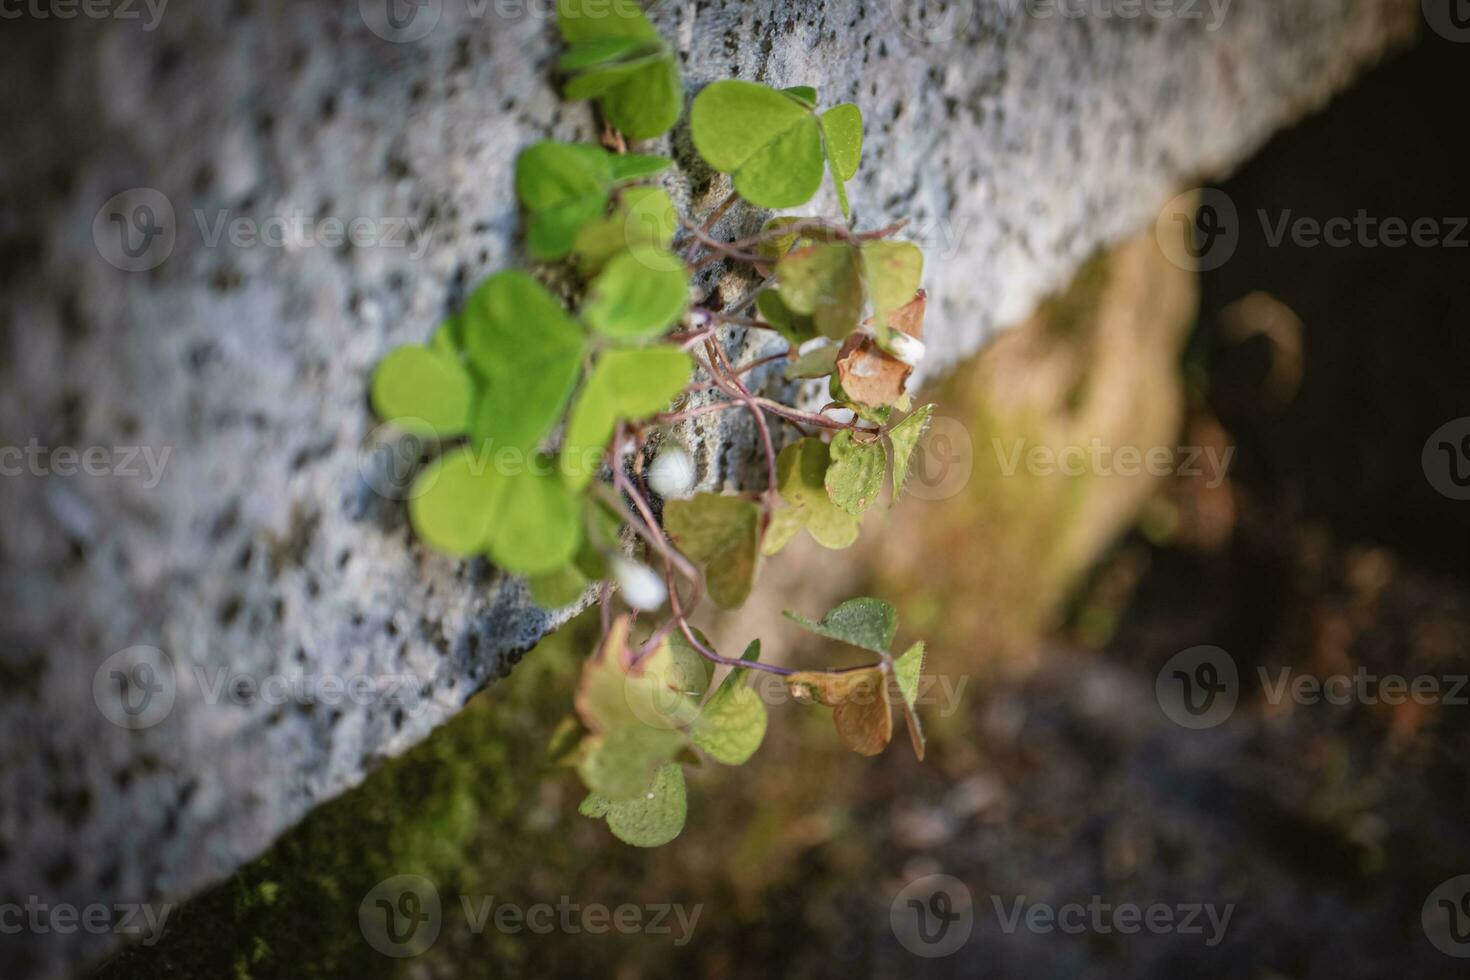 hout zuring wit Gesloten bloemknoppen met Klaver Leuk vinden bladeren tussen twee graniet blokken van verkoudheid trap foto